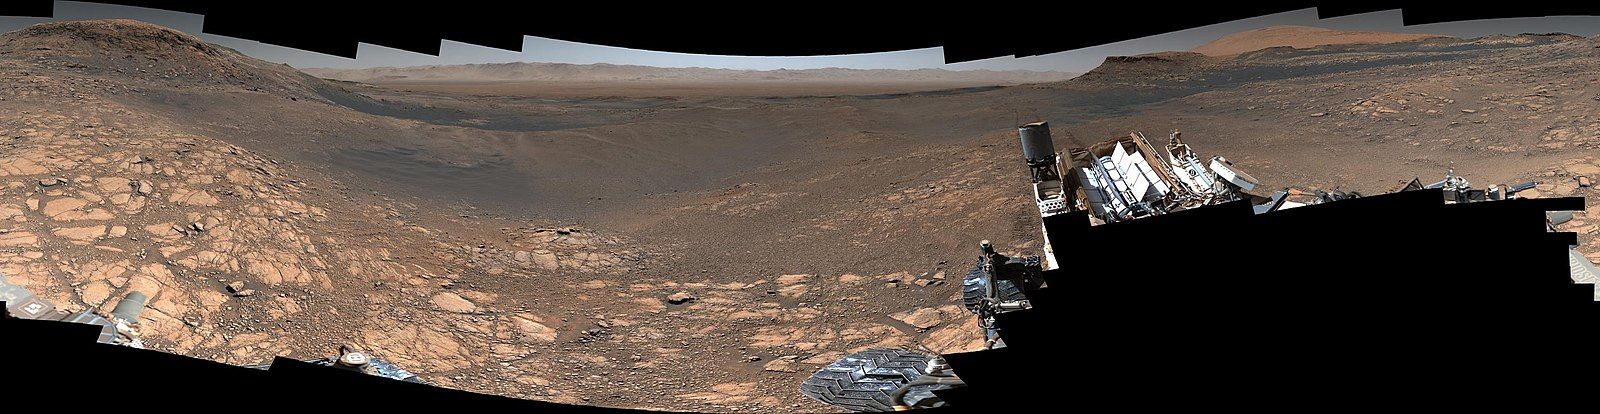 Sonda Curiosity poslala z Marsu zatiaľ najdetailnejšiu panorámu. Je zložená z vyše 1 000 fotografií